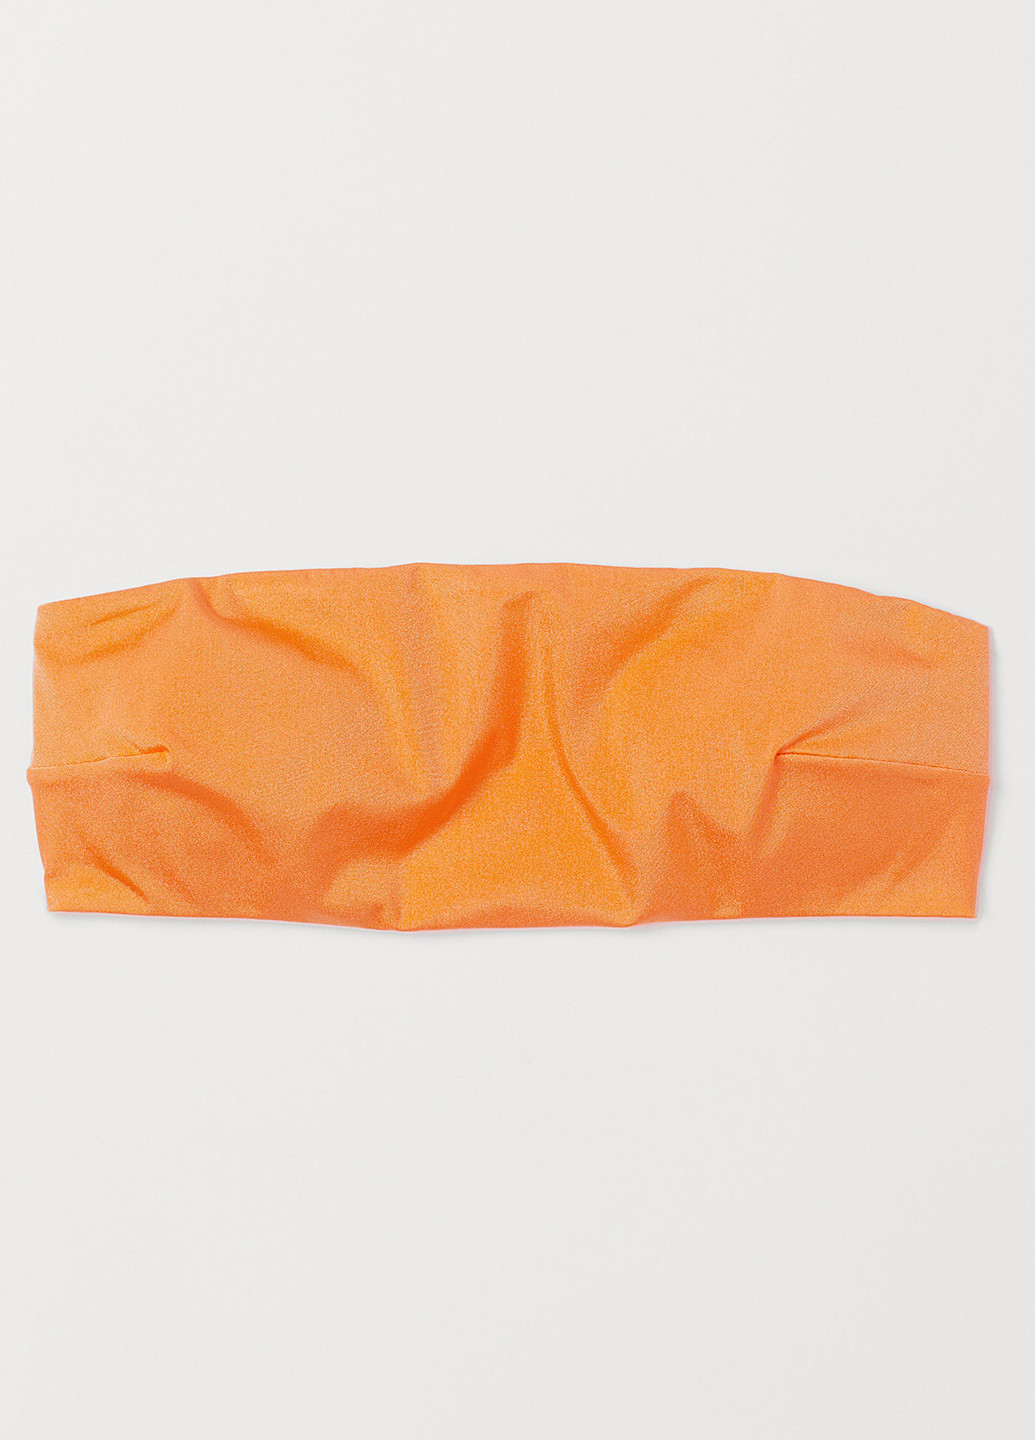 Купальный лиф H&M бандо однотонный оранжевый пляжный полиамид